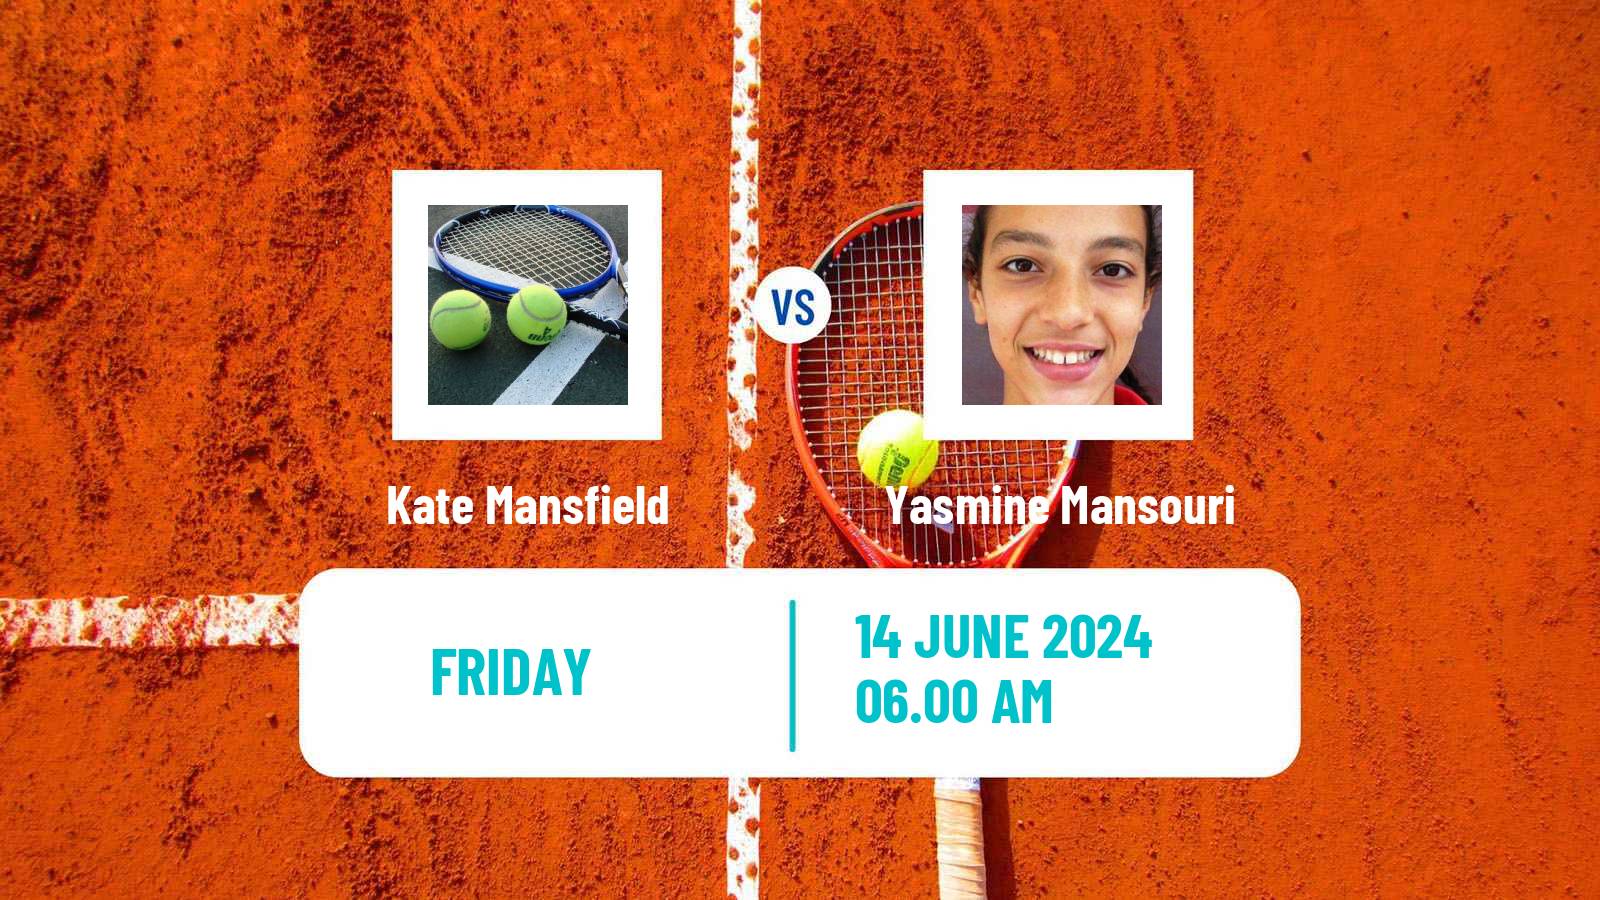 Tennis ITF W15 Monastir 22 Women Kate Mansfield - Yasmine Mansouri